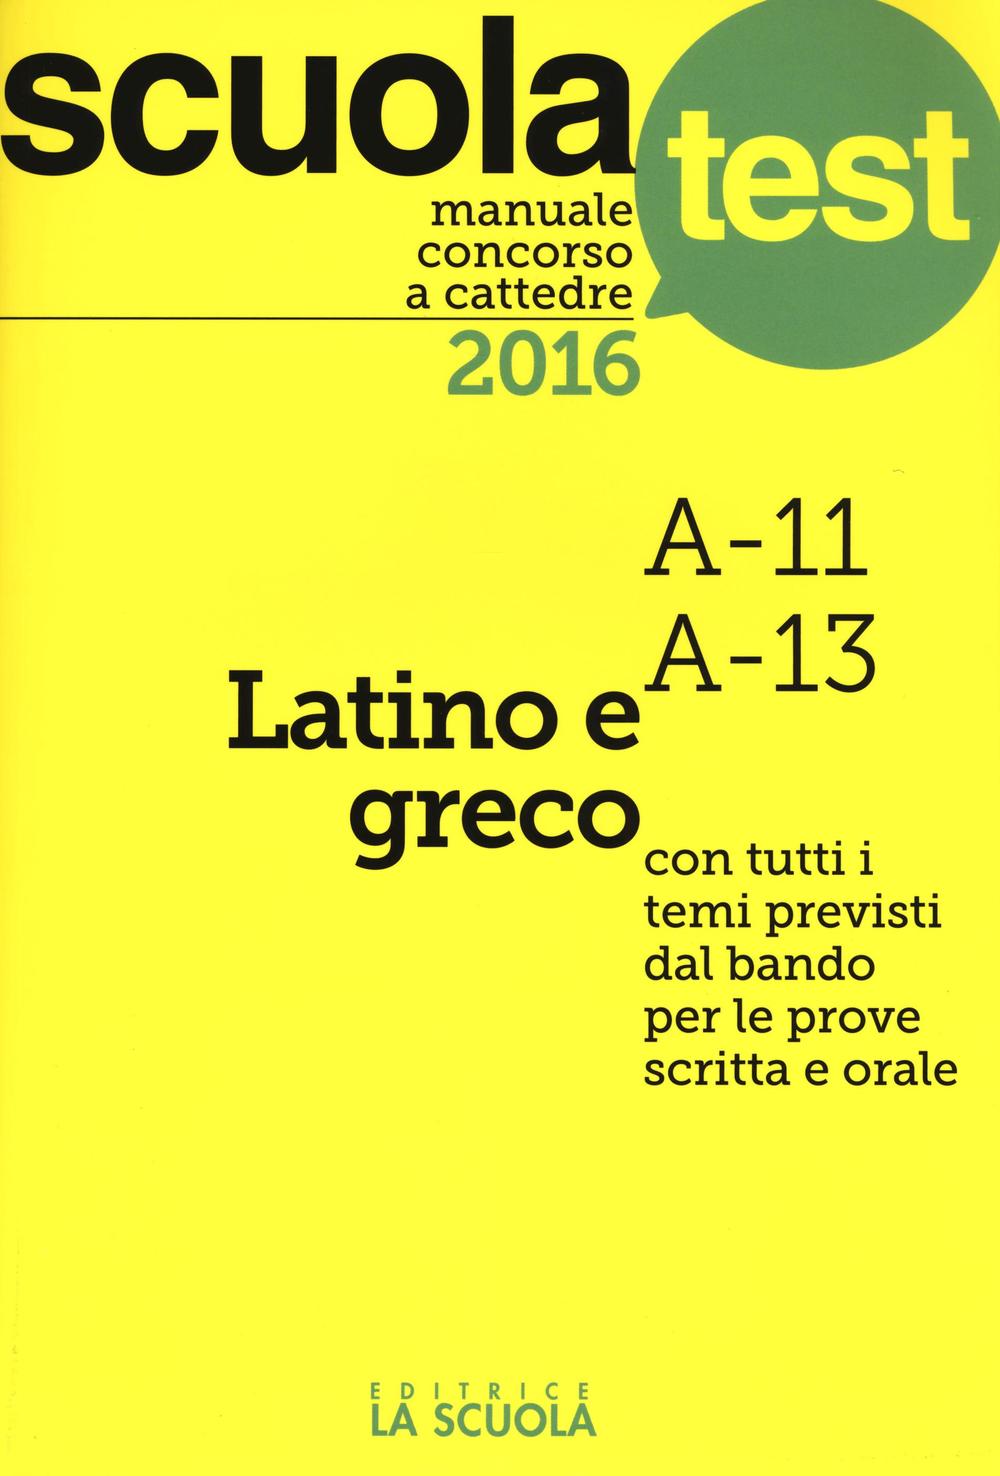 Manuale concorso a cattedre 2016. Latino e greco A11, A13